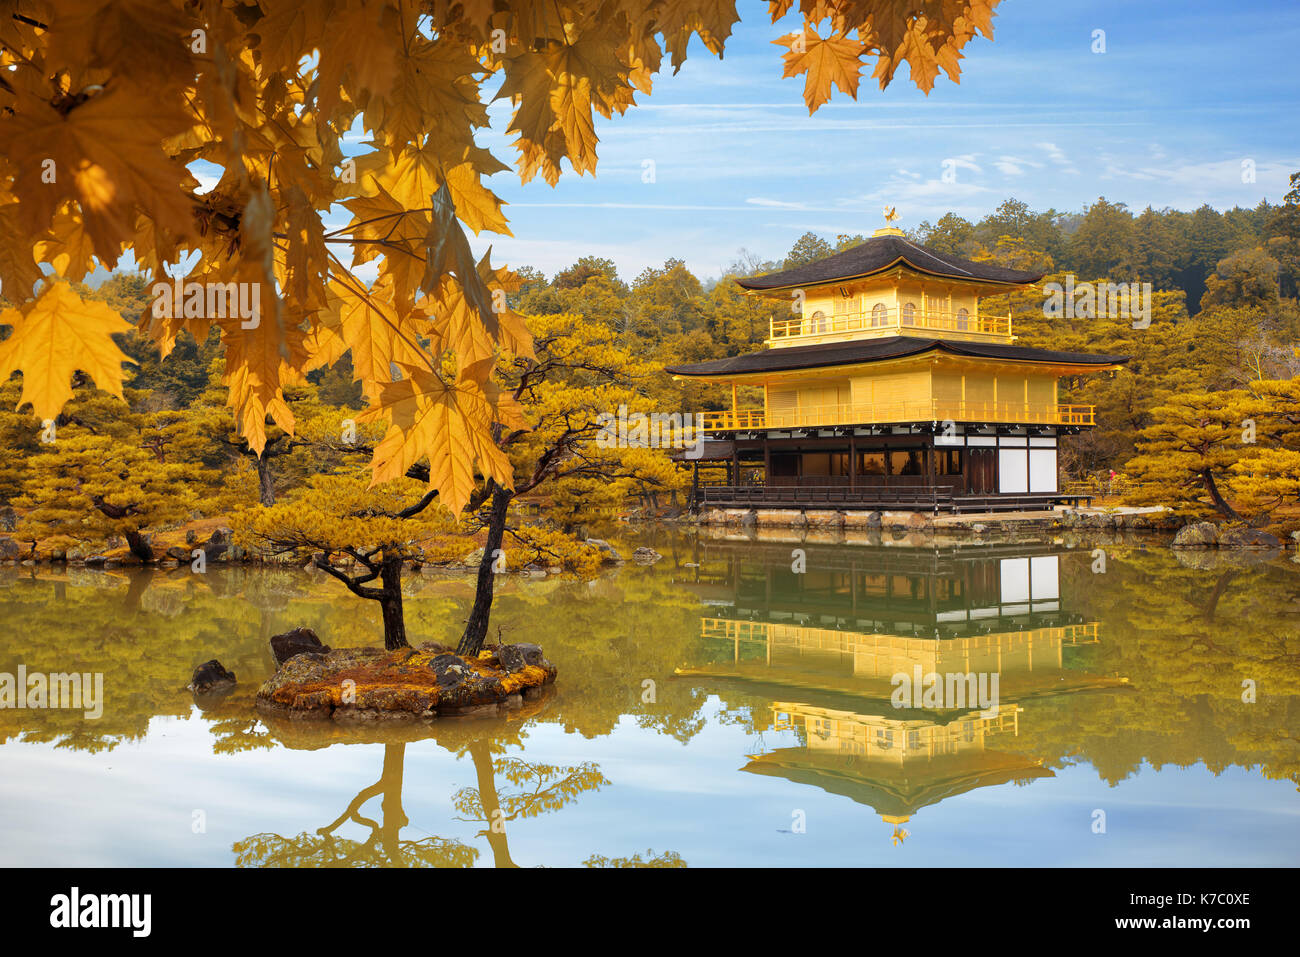 La temporada de otoño de Japón Templo Kinkakuji (Pabellón de Oro) en Kyoto, Japón. Foto de stock